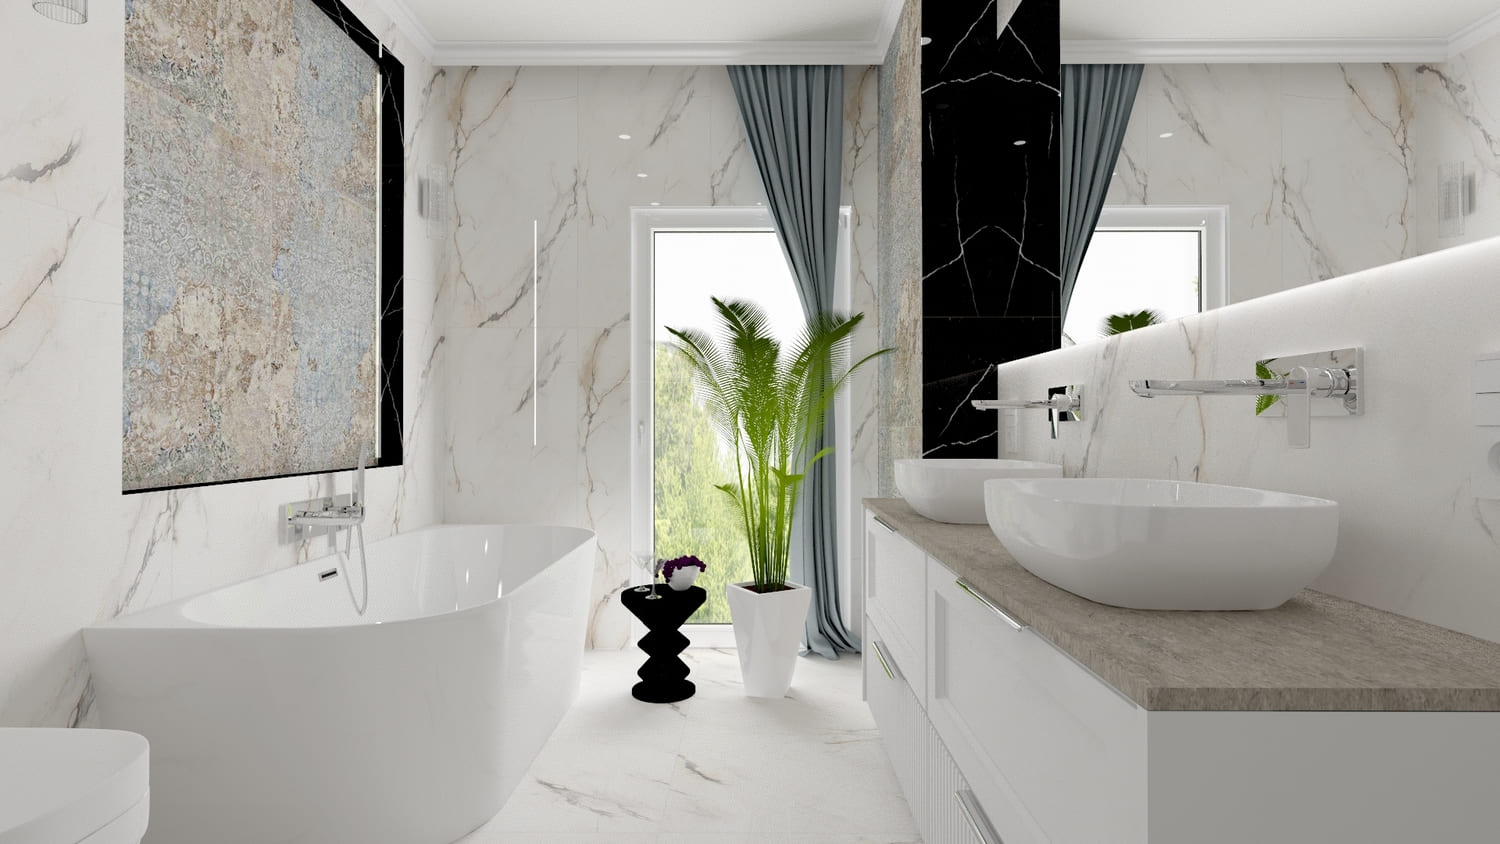 Biała łazienka marmur - wizualizacja. Pomysł na łazienkę marmurową, białą z elementem dekoracyjnym w postaci płytki patchwork na ścianie nad białą wanną oraz czarną wstawką z płytek marmurowych.